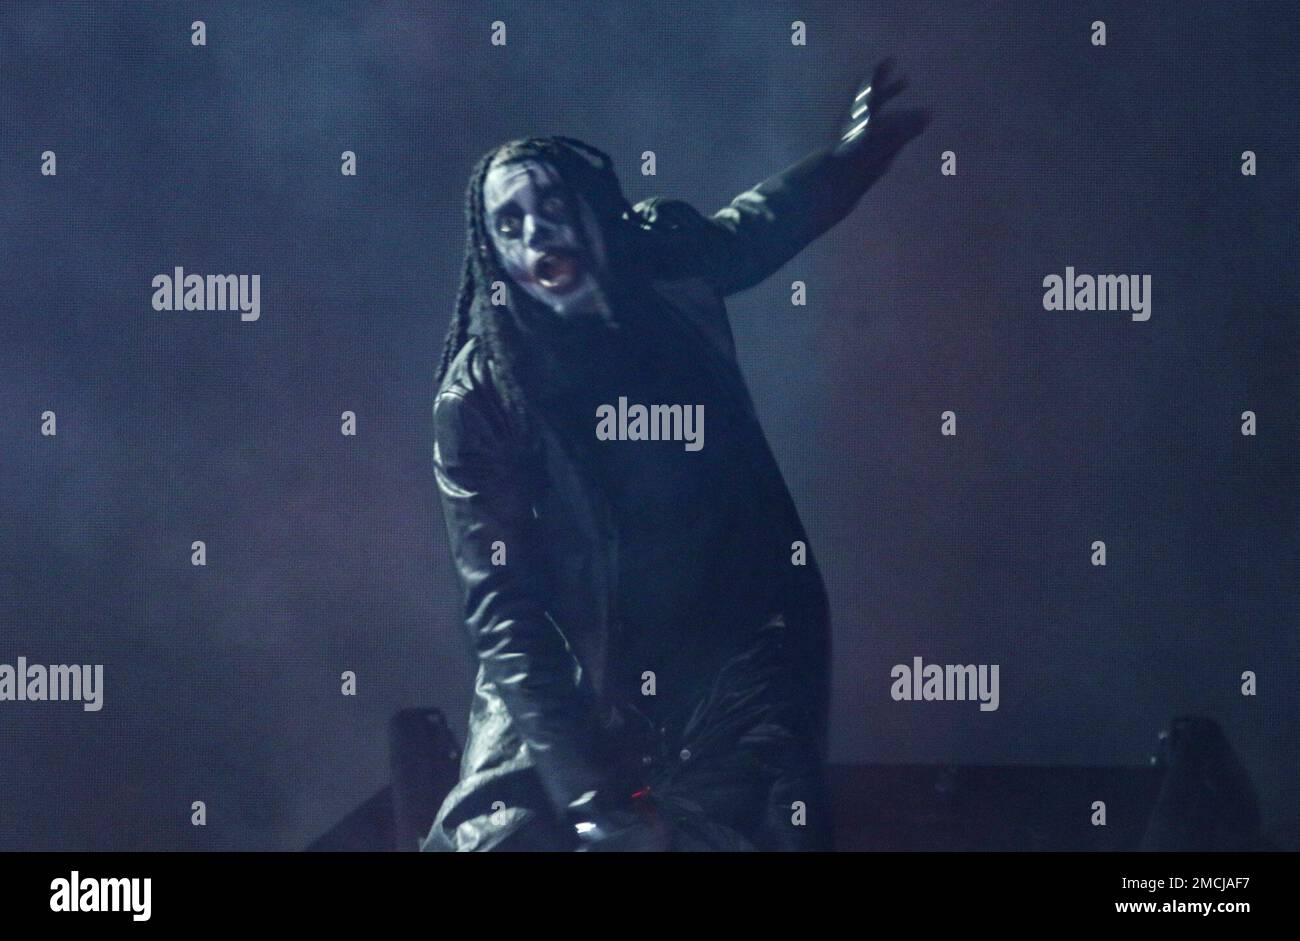 PHOTOS: Playboi Carti brings King Vamp Tour to State Farm Arena